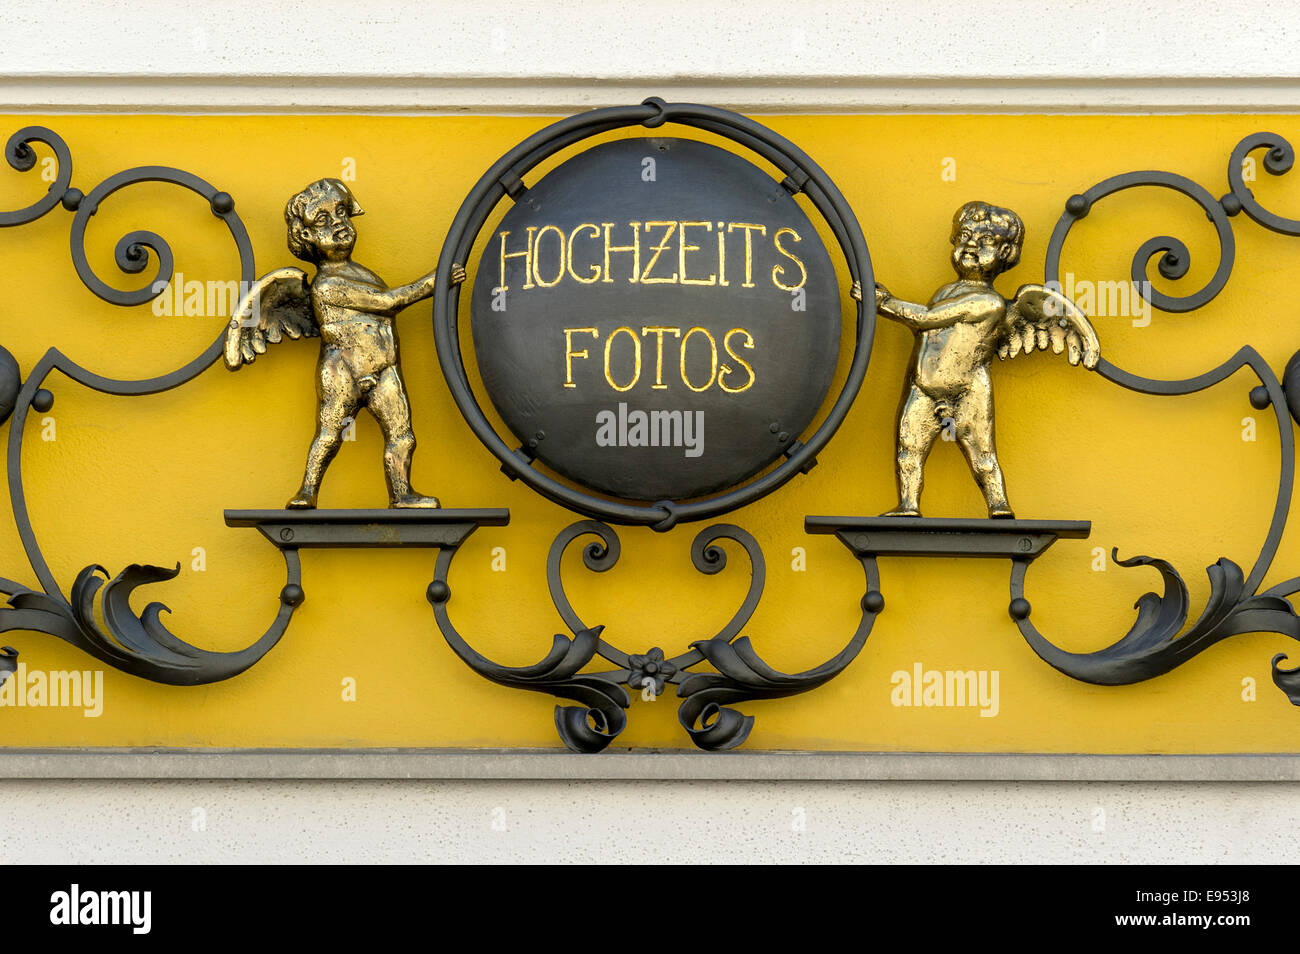 Le fer forgé signe pour 'Hochzeitsfotos' ou photos de mariage avec angelots sur une photo shop, Murnau, Upper Bavaria, Bavaria, Germany Banque D'Images